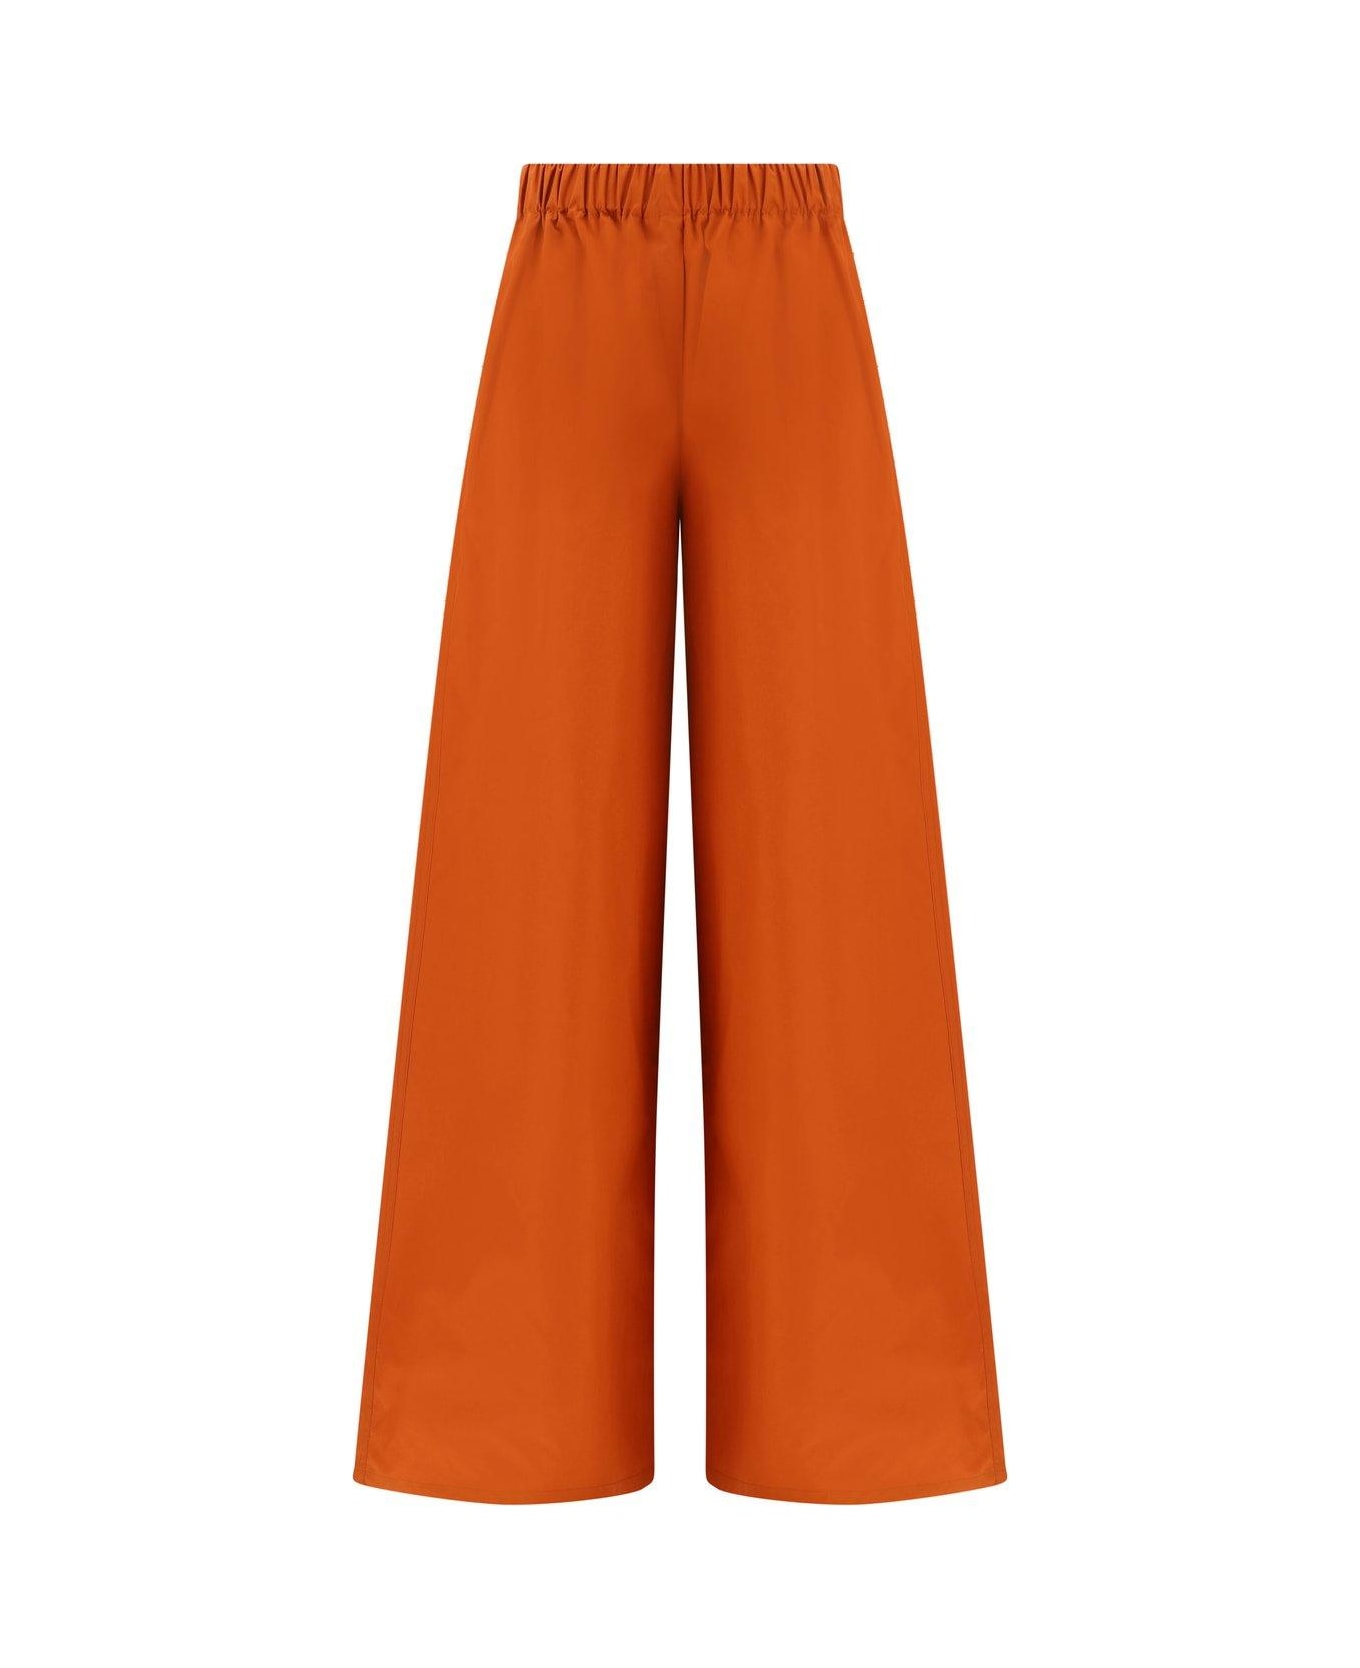 Max Mara High Waisted Wide Leg Trousers - Orange ボトムス